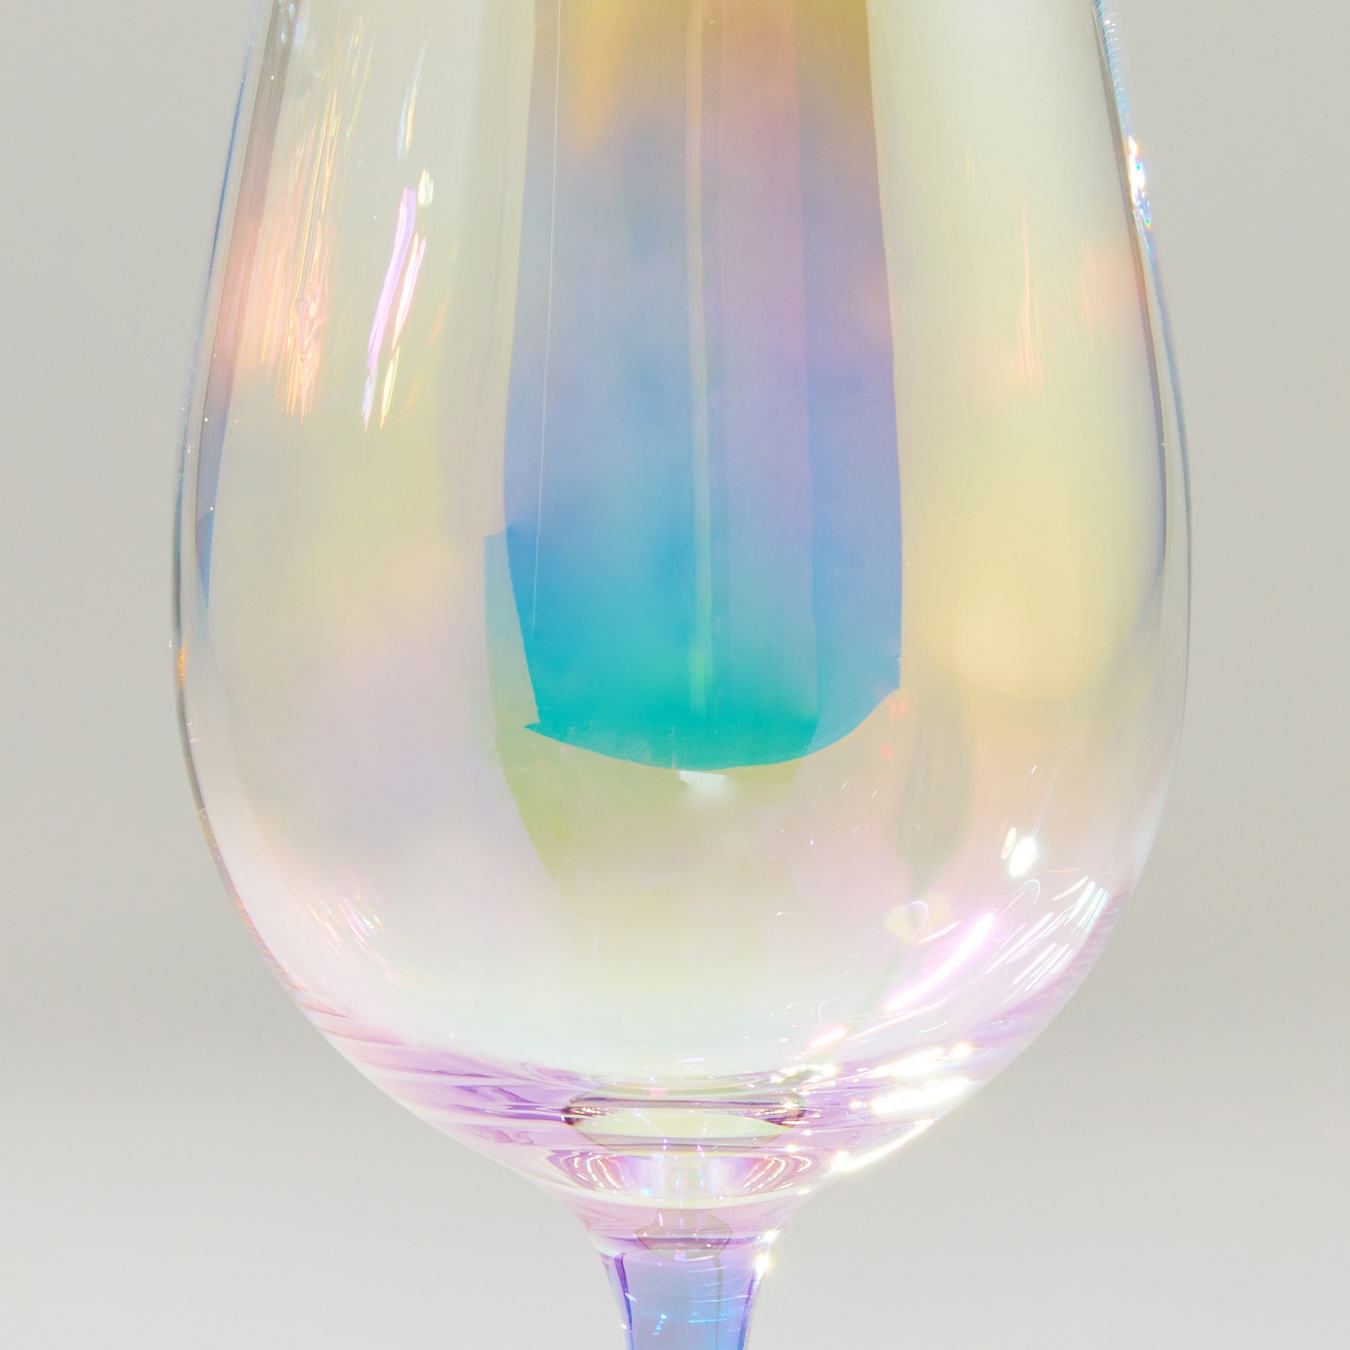 Monterey Multicolored wine glasses